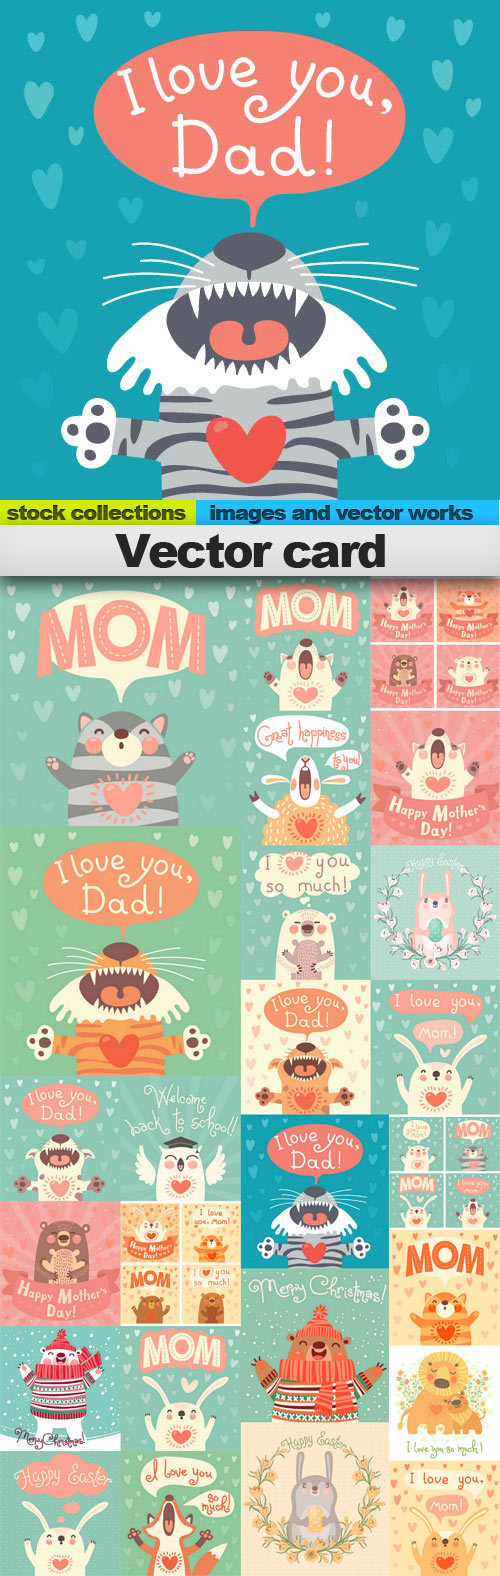 Vector card 25xEPS